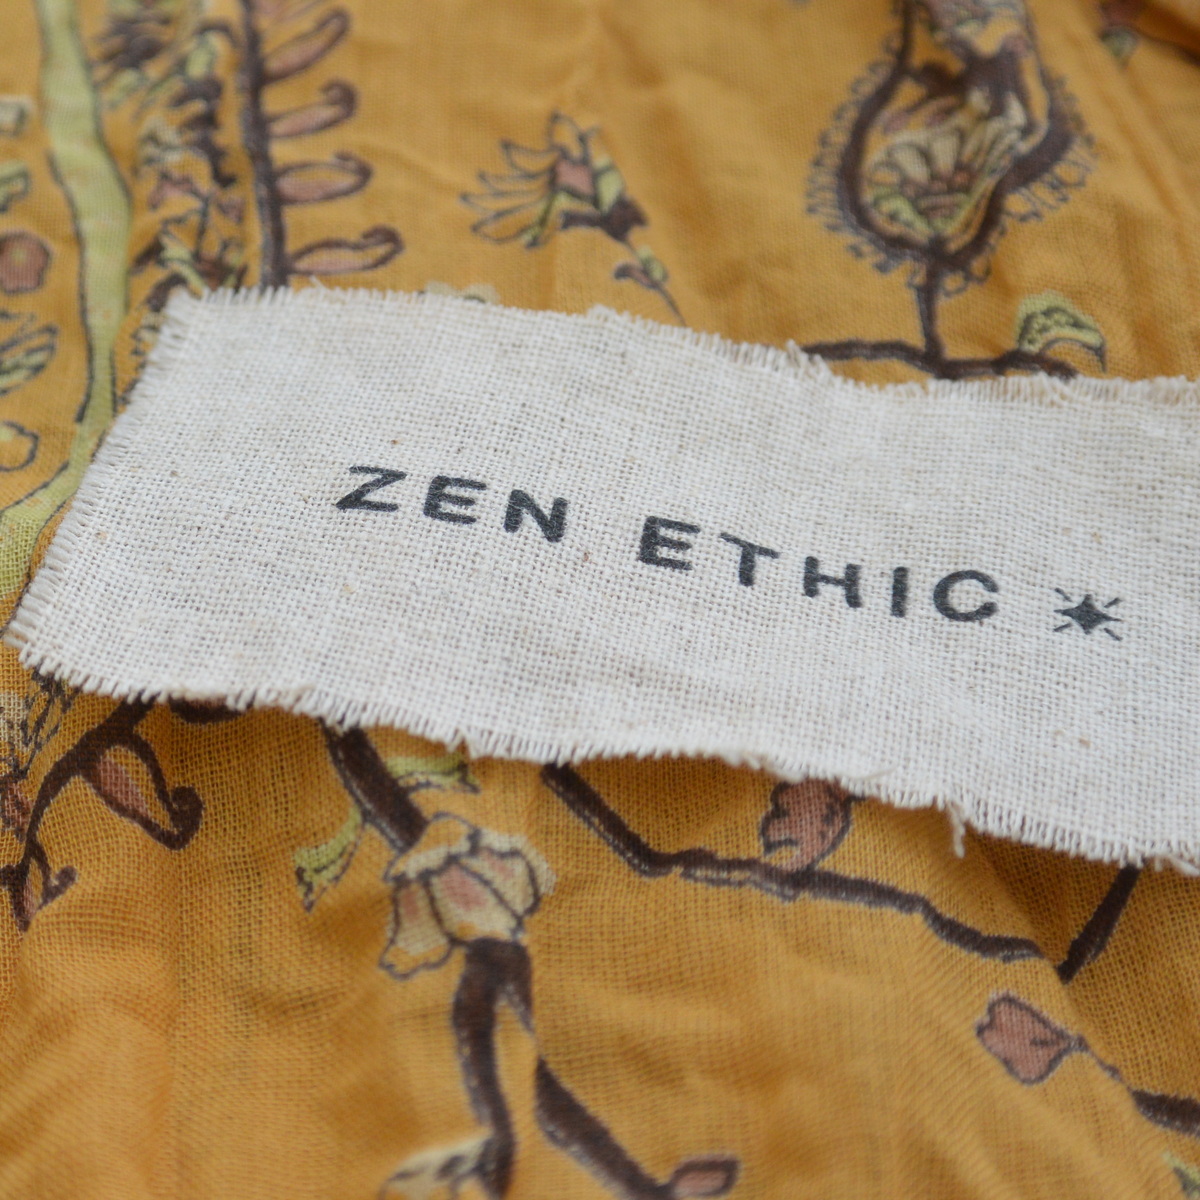 foulard zen ethic grande-etole-raj-voile-de-coton-110x180cm une idee cadeau chez ugo et lea   (7)